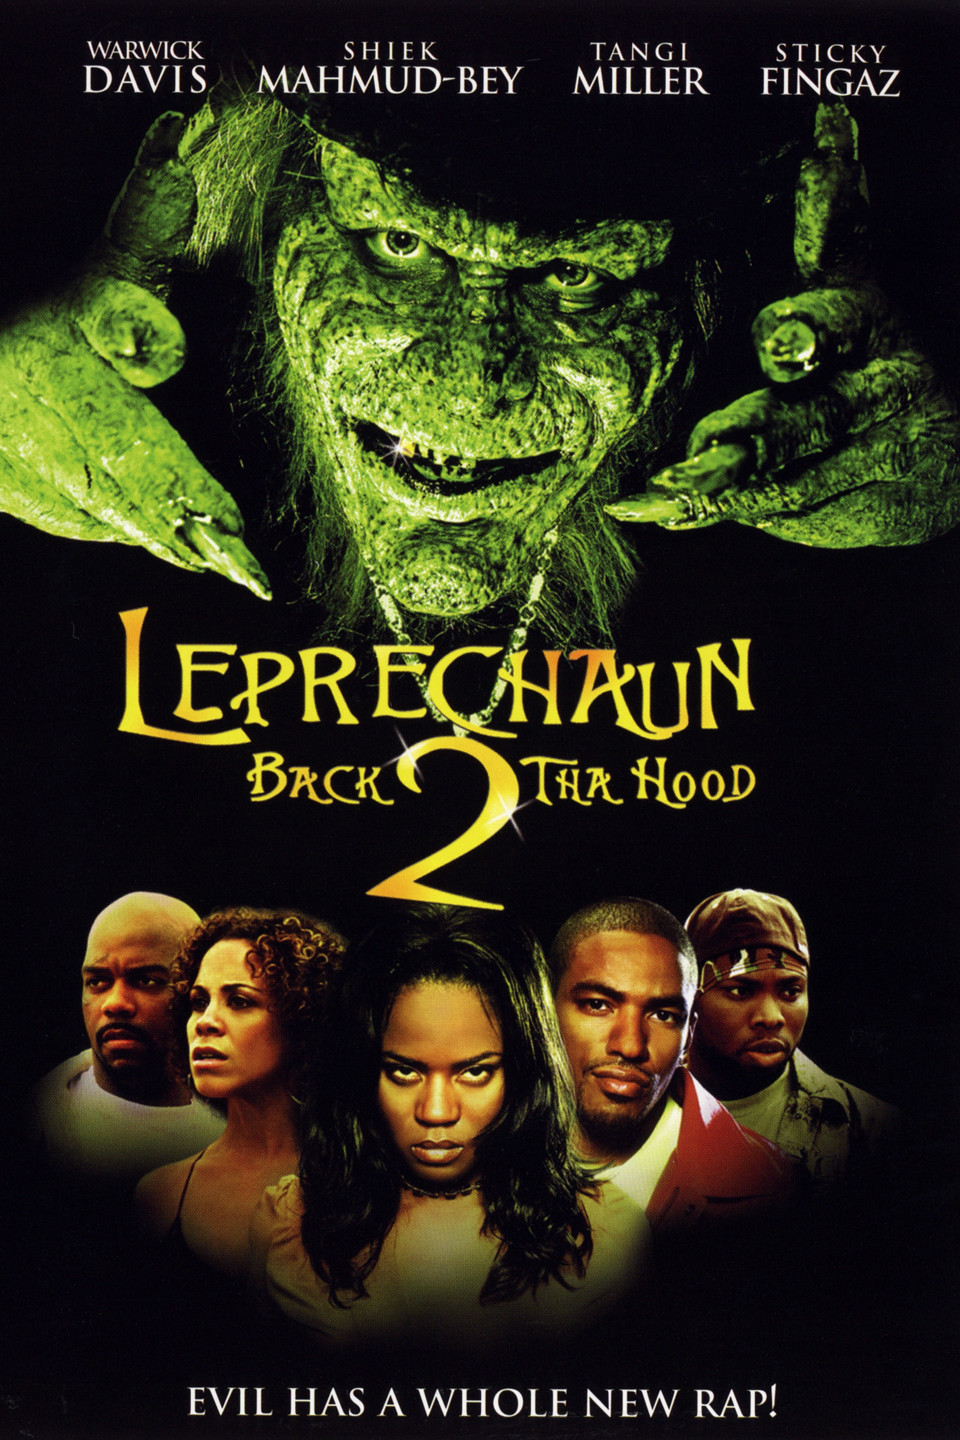 Leprechaun 6: Back 2 Tha Hood